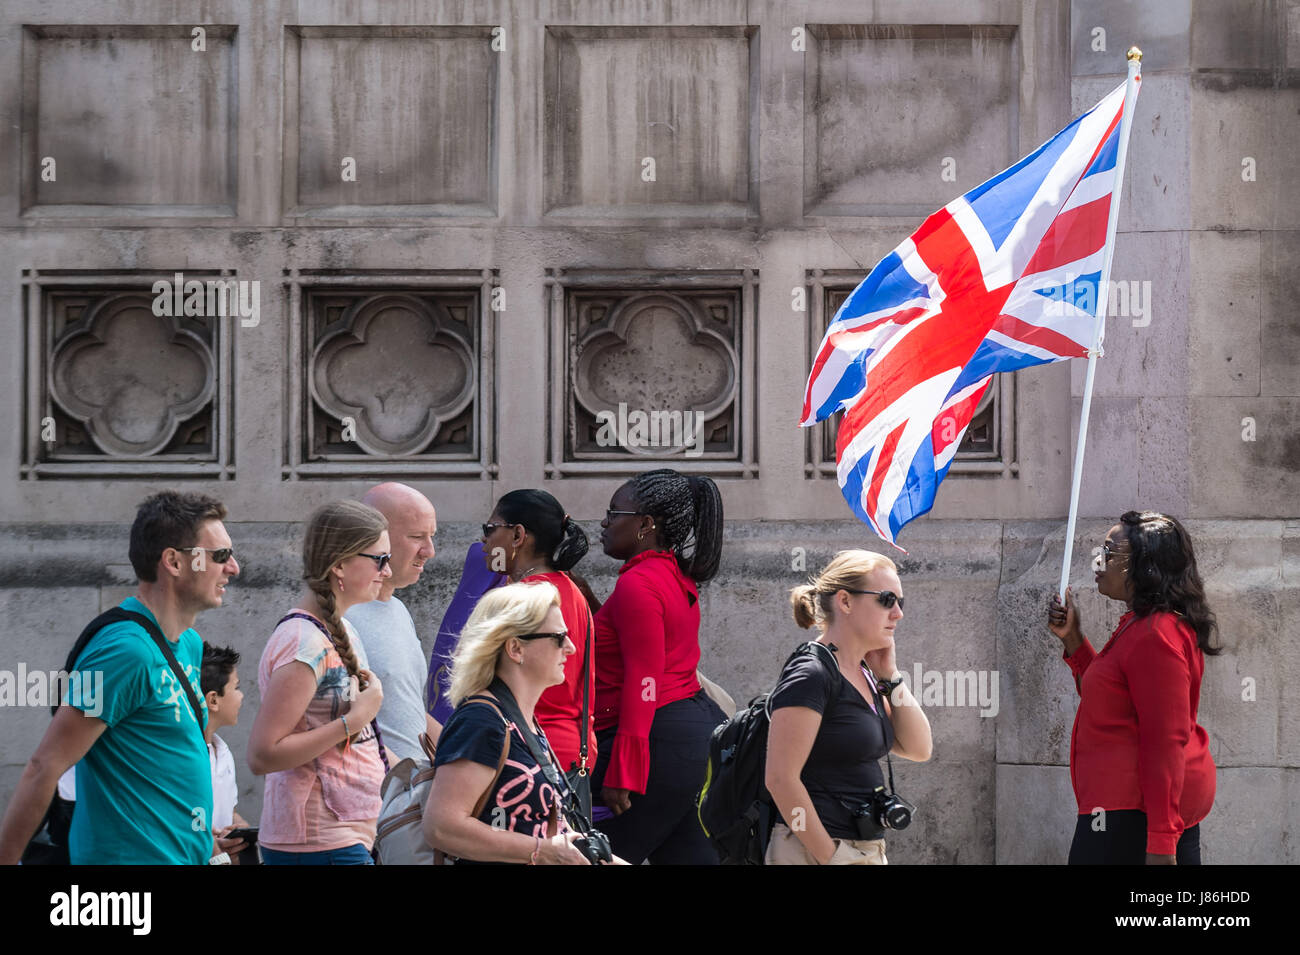 London, UK. 27. Mai 2017. Christliche Bewegung "Jammern Frauen weltweit" Marsch durch Westminster Kerl Corbishley/Alamy Live News Stockfoto